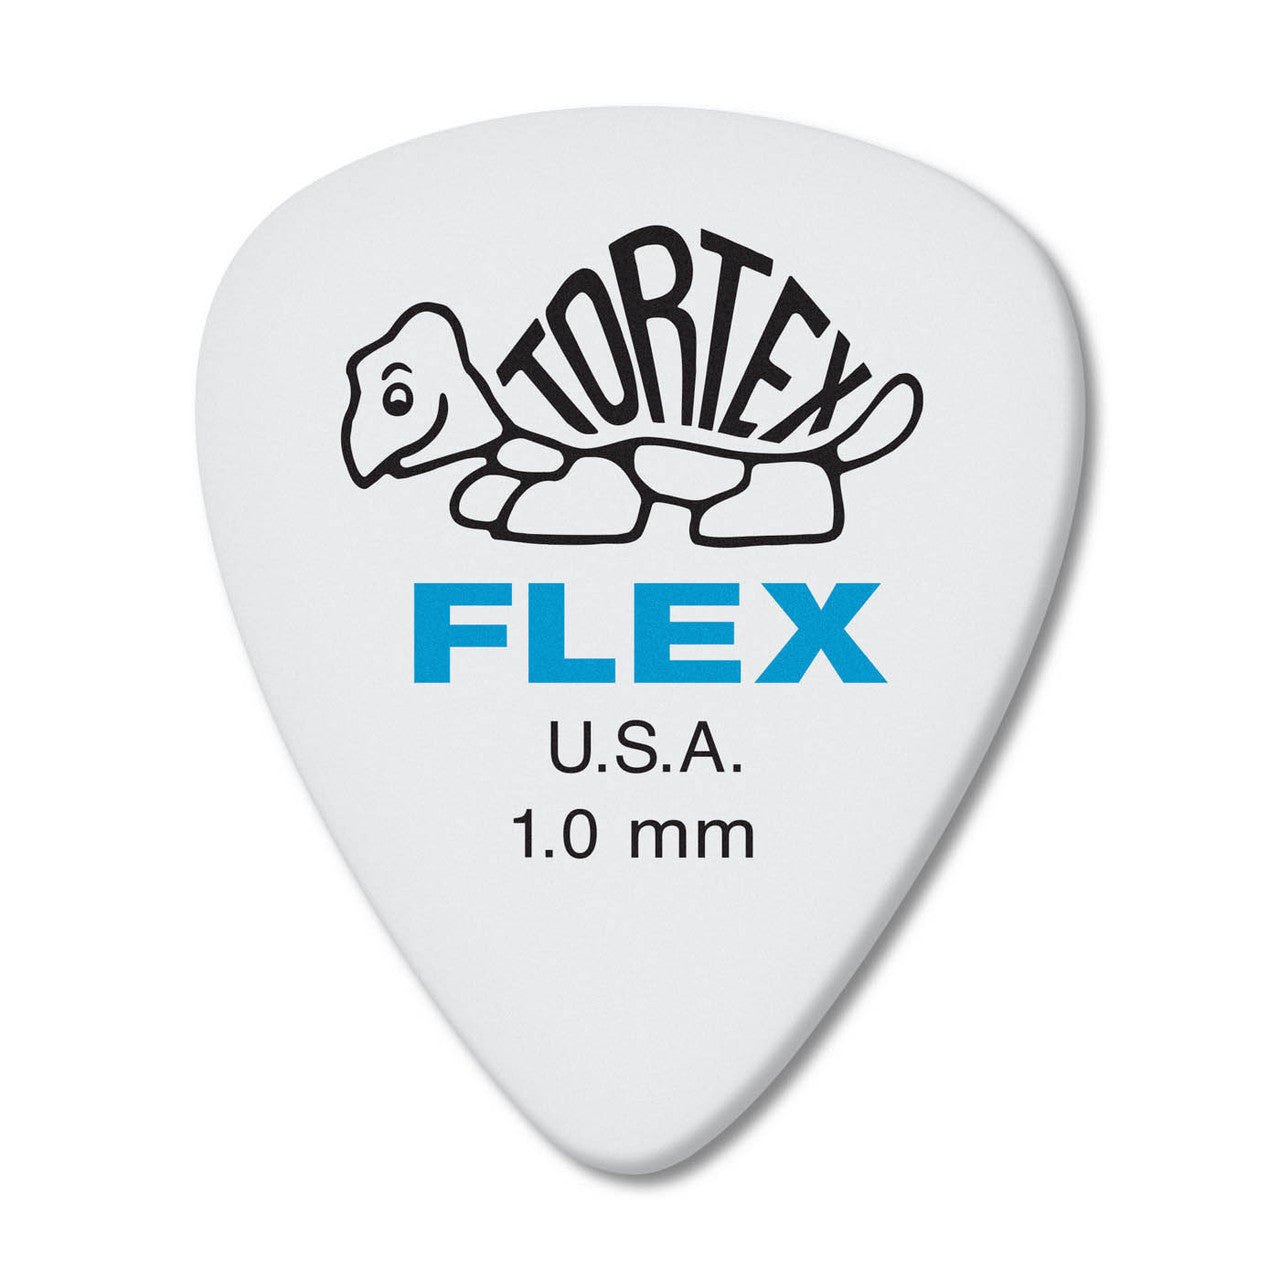 Dunlop Tortex Flex 1.0mm 12 Pack